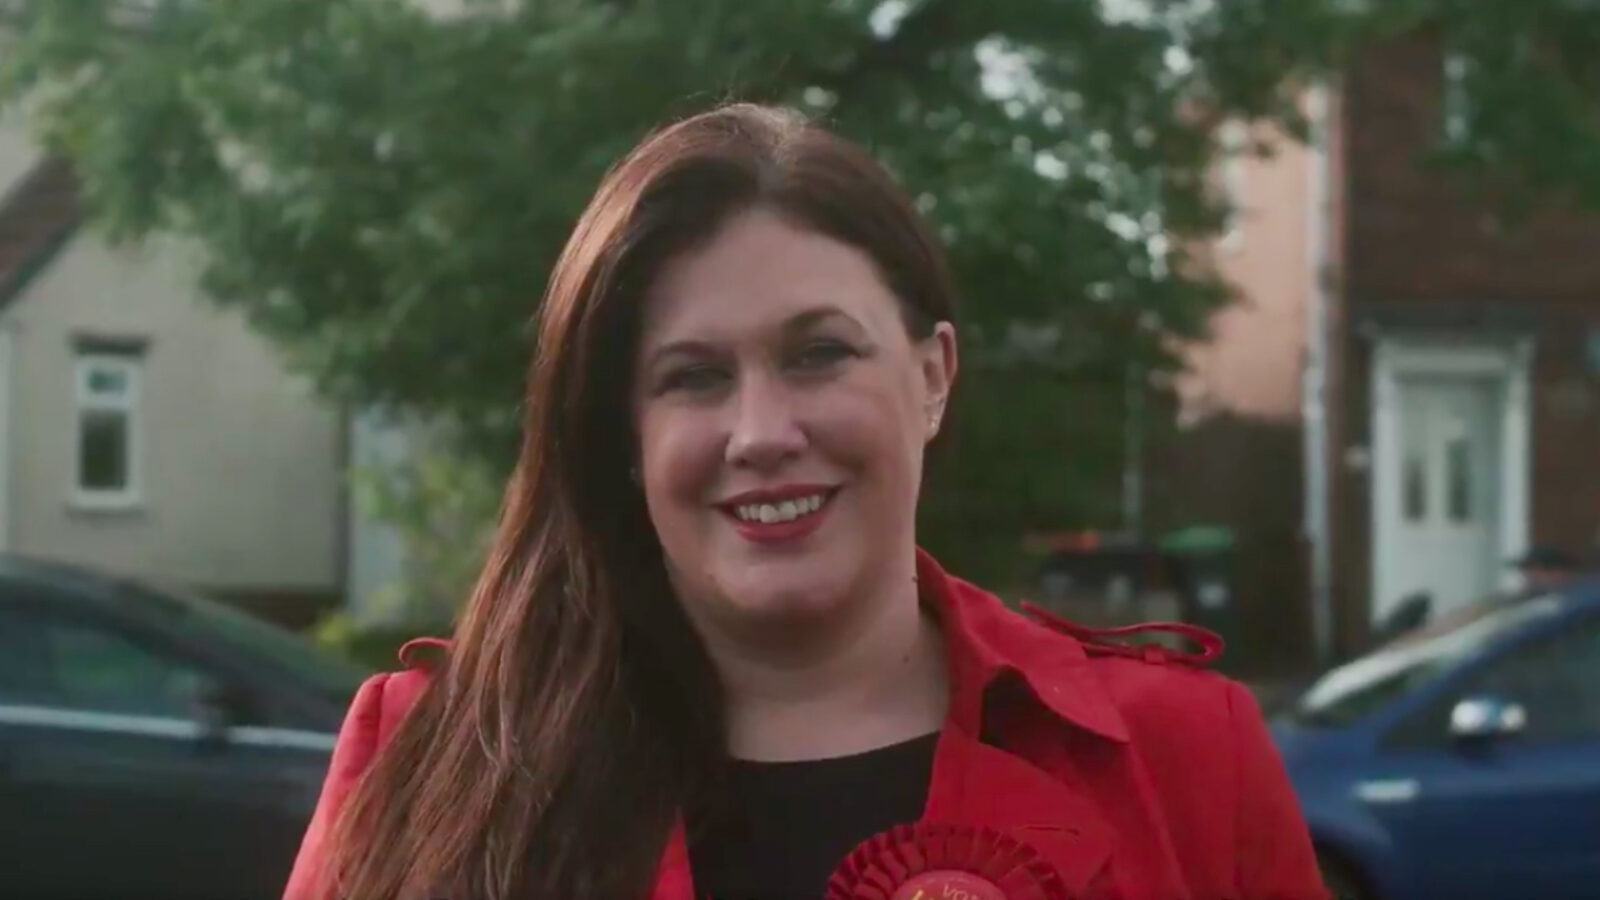 Natalie Fleet replaces Gloria de Piero as Labour's Ashfield candidate ...